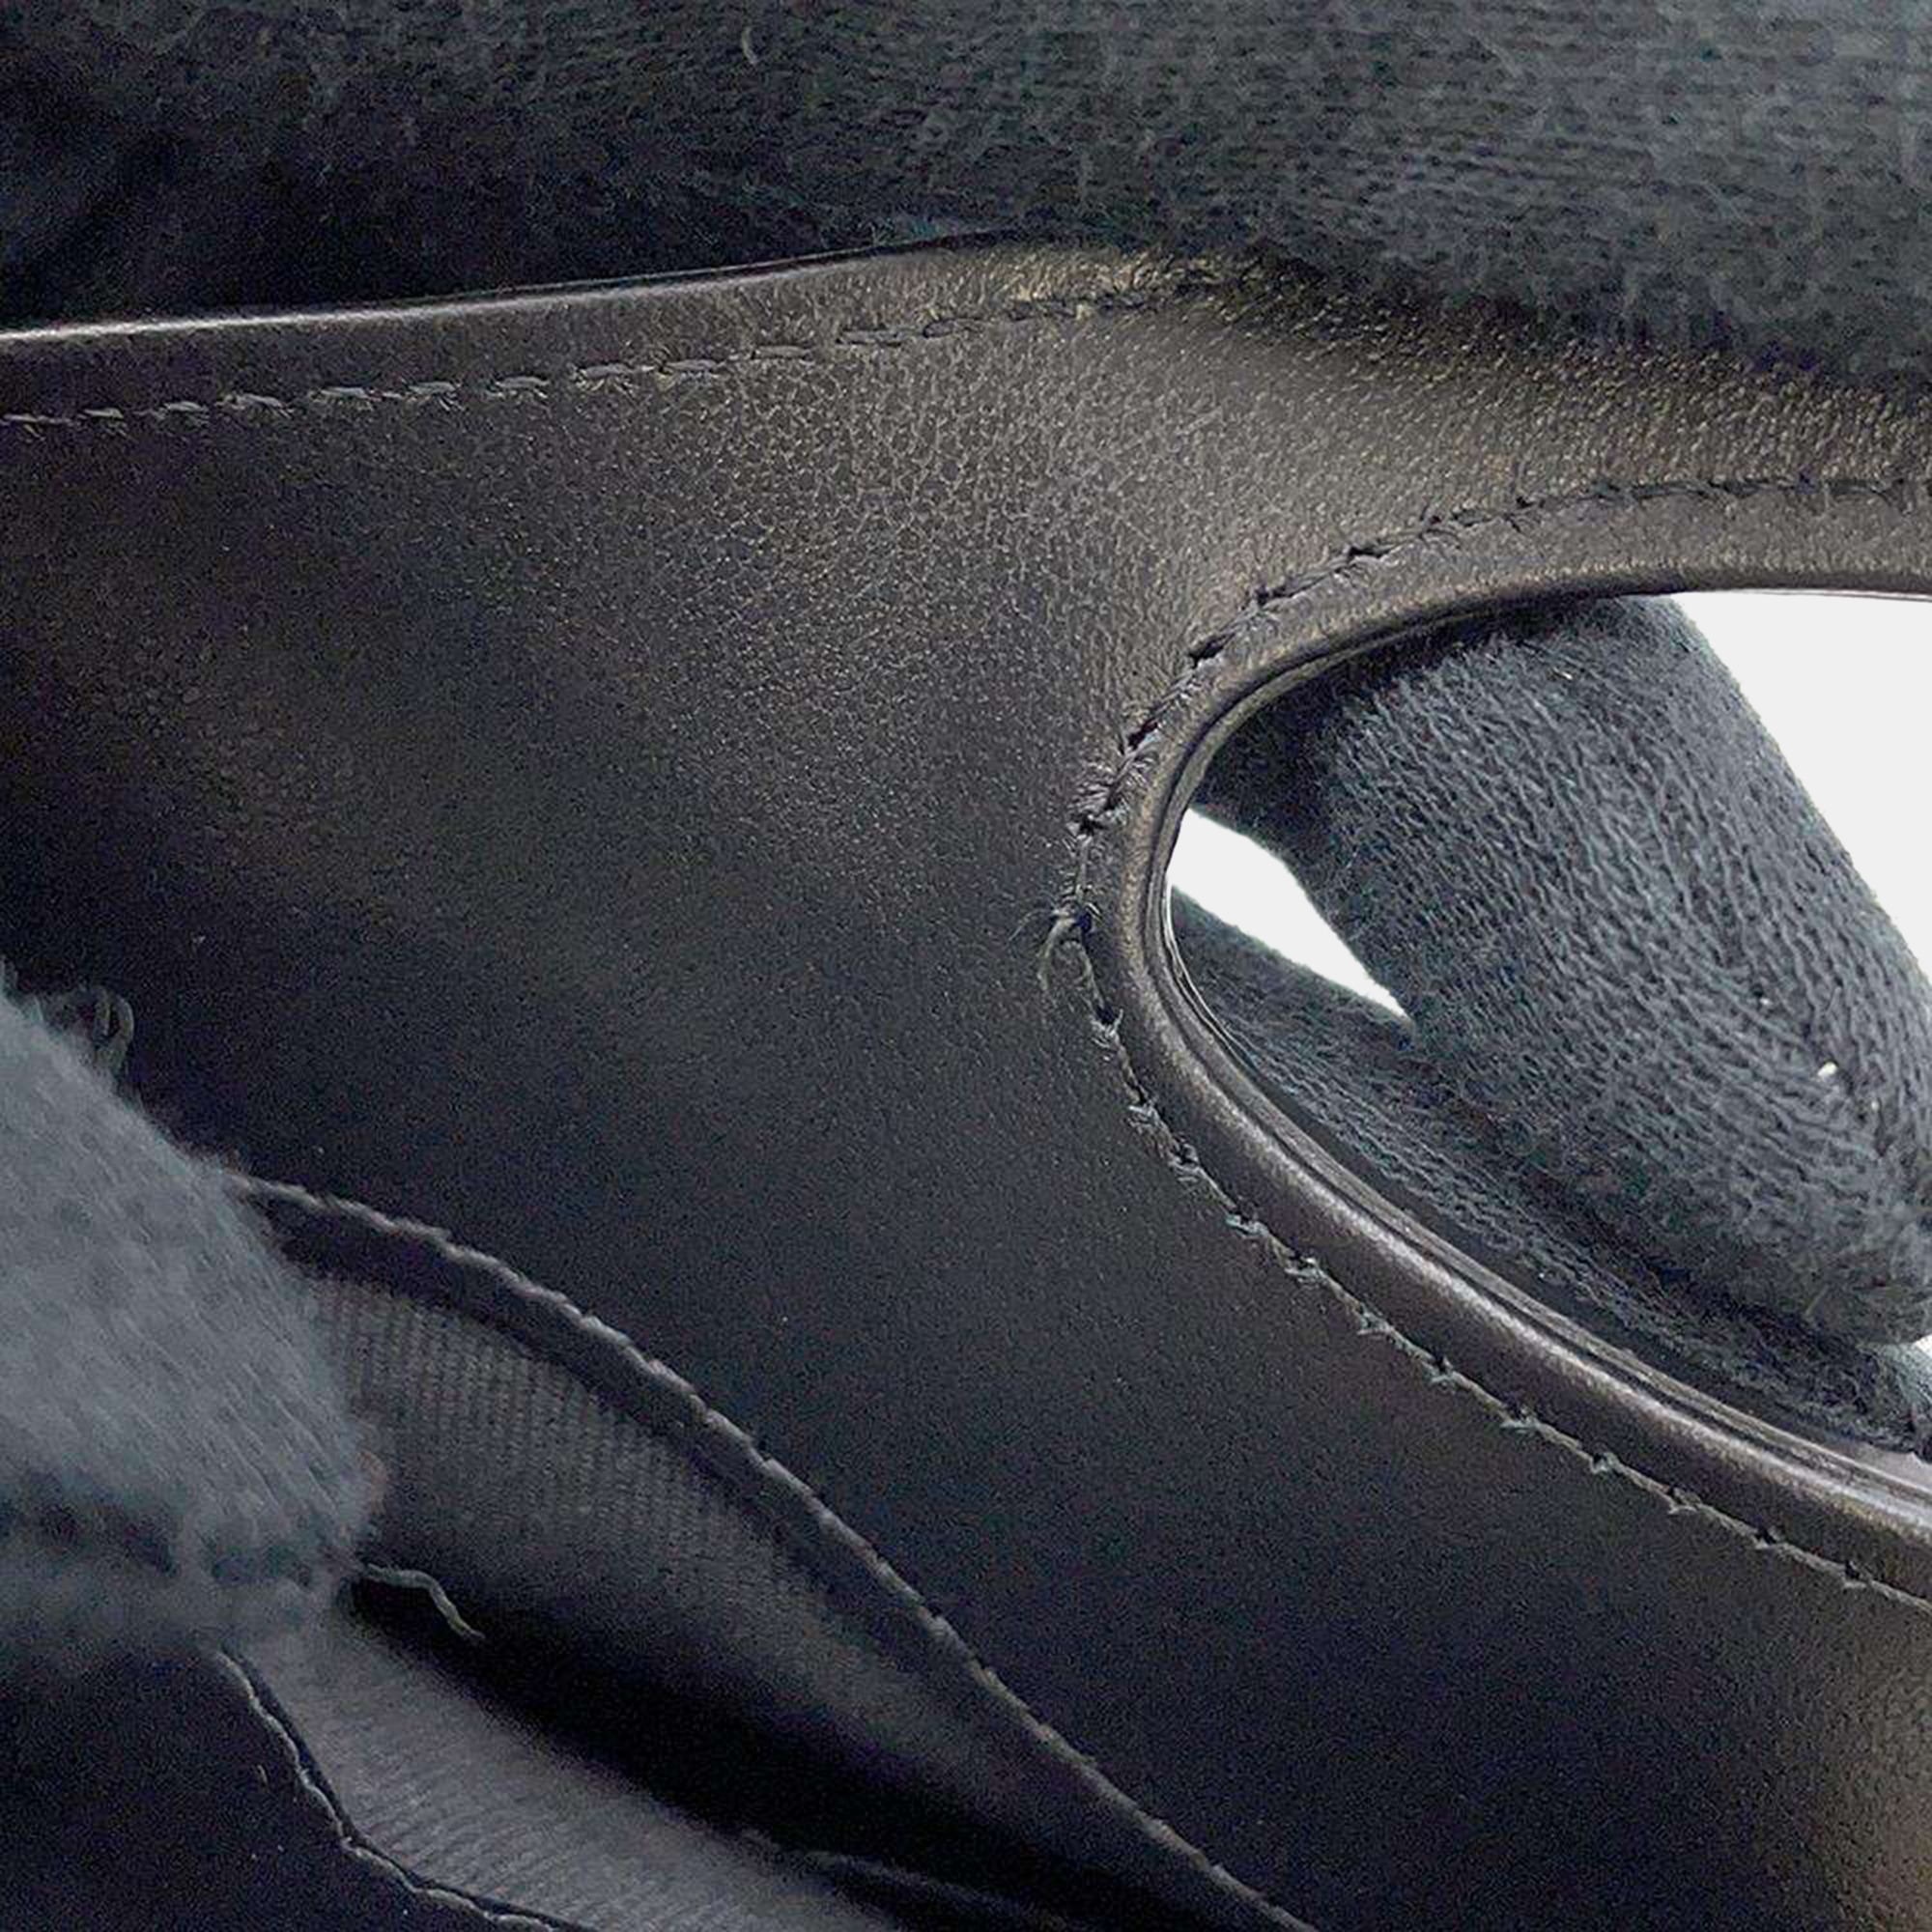 Chanel Black Leather CC Shoulder Bag